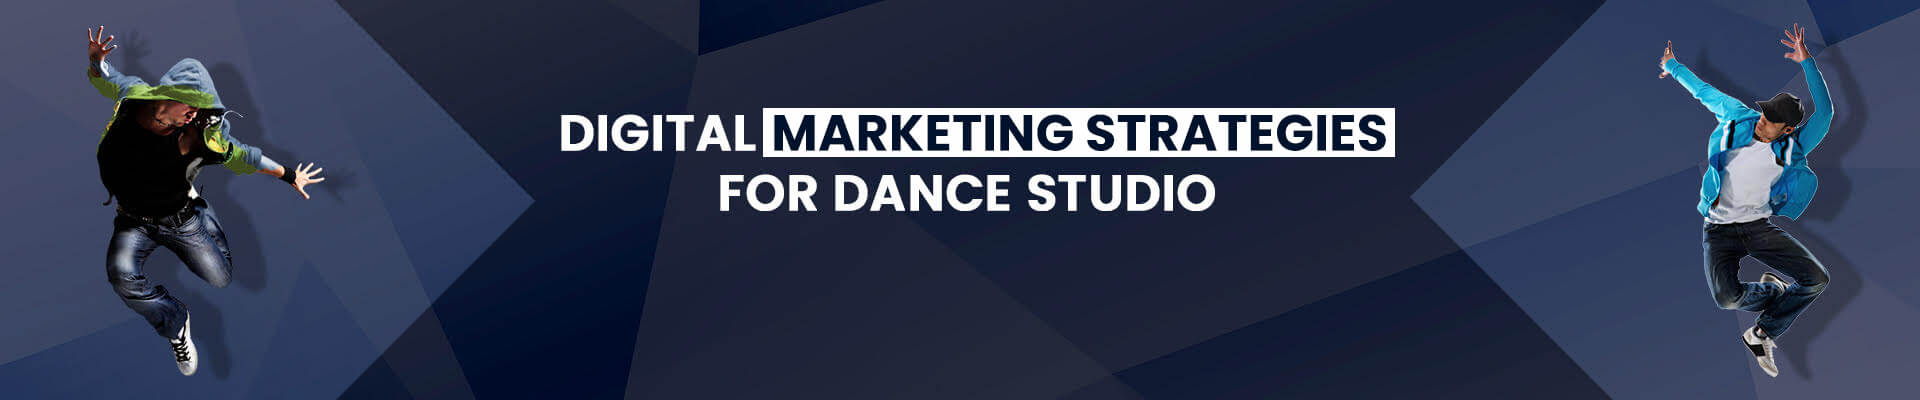 Dance Studio Marketing